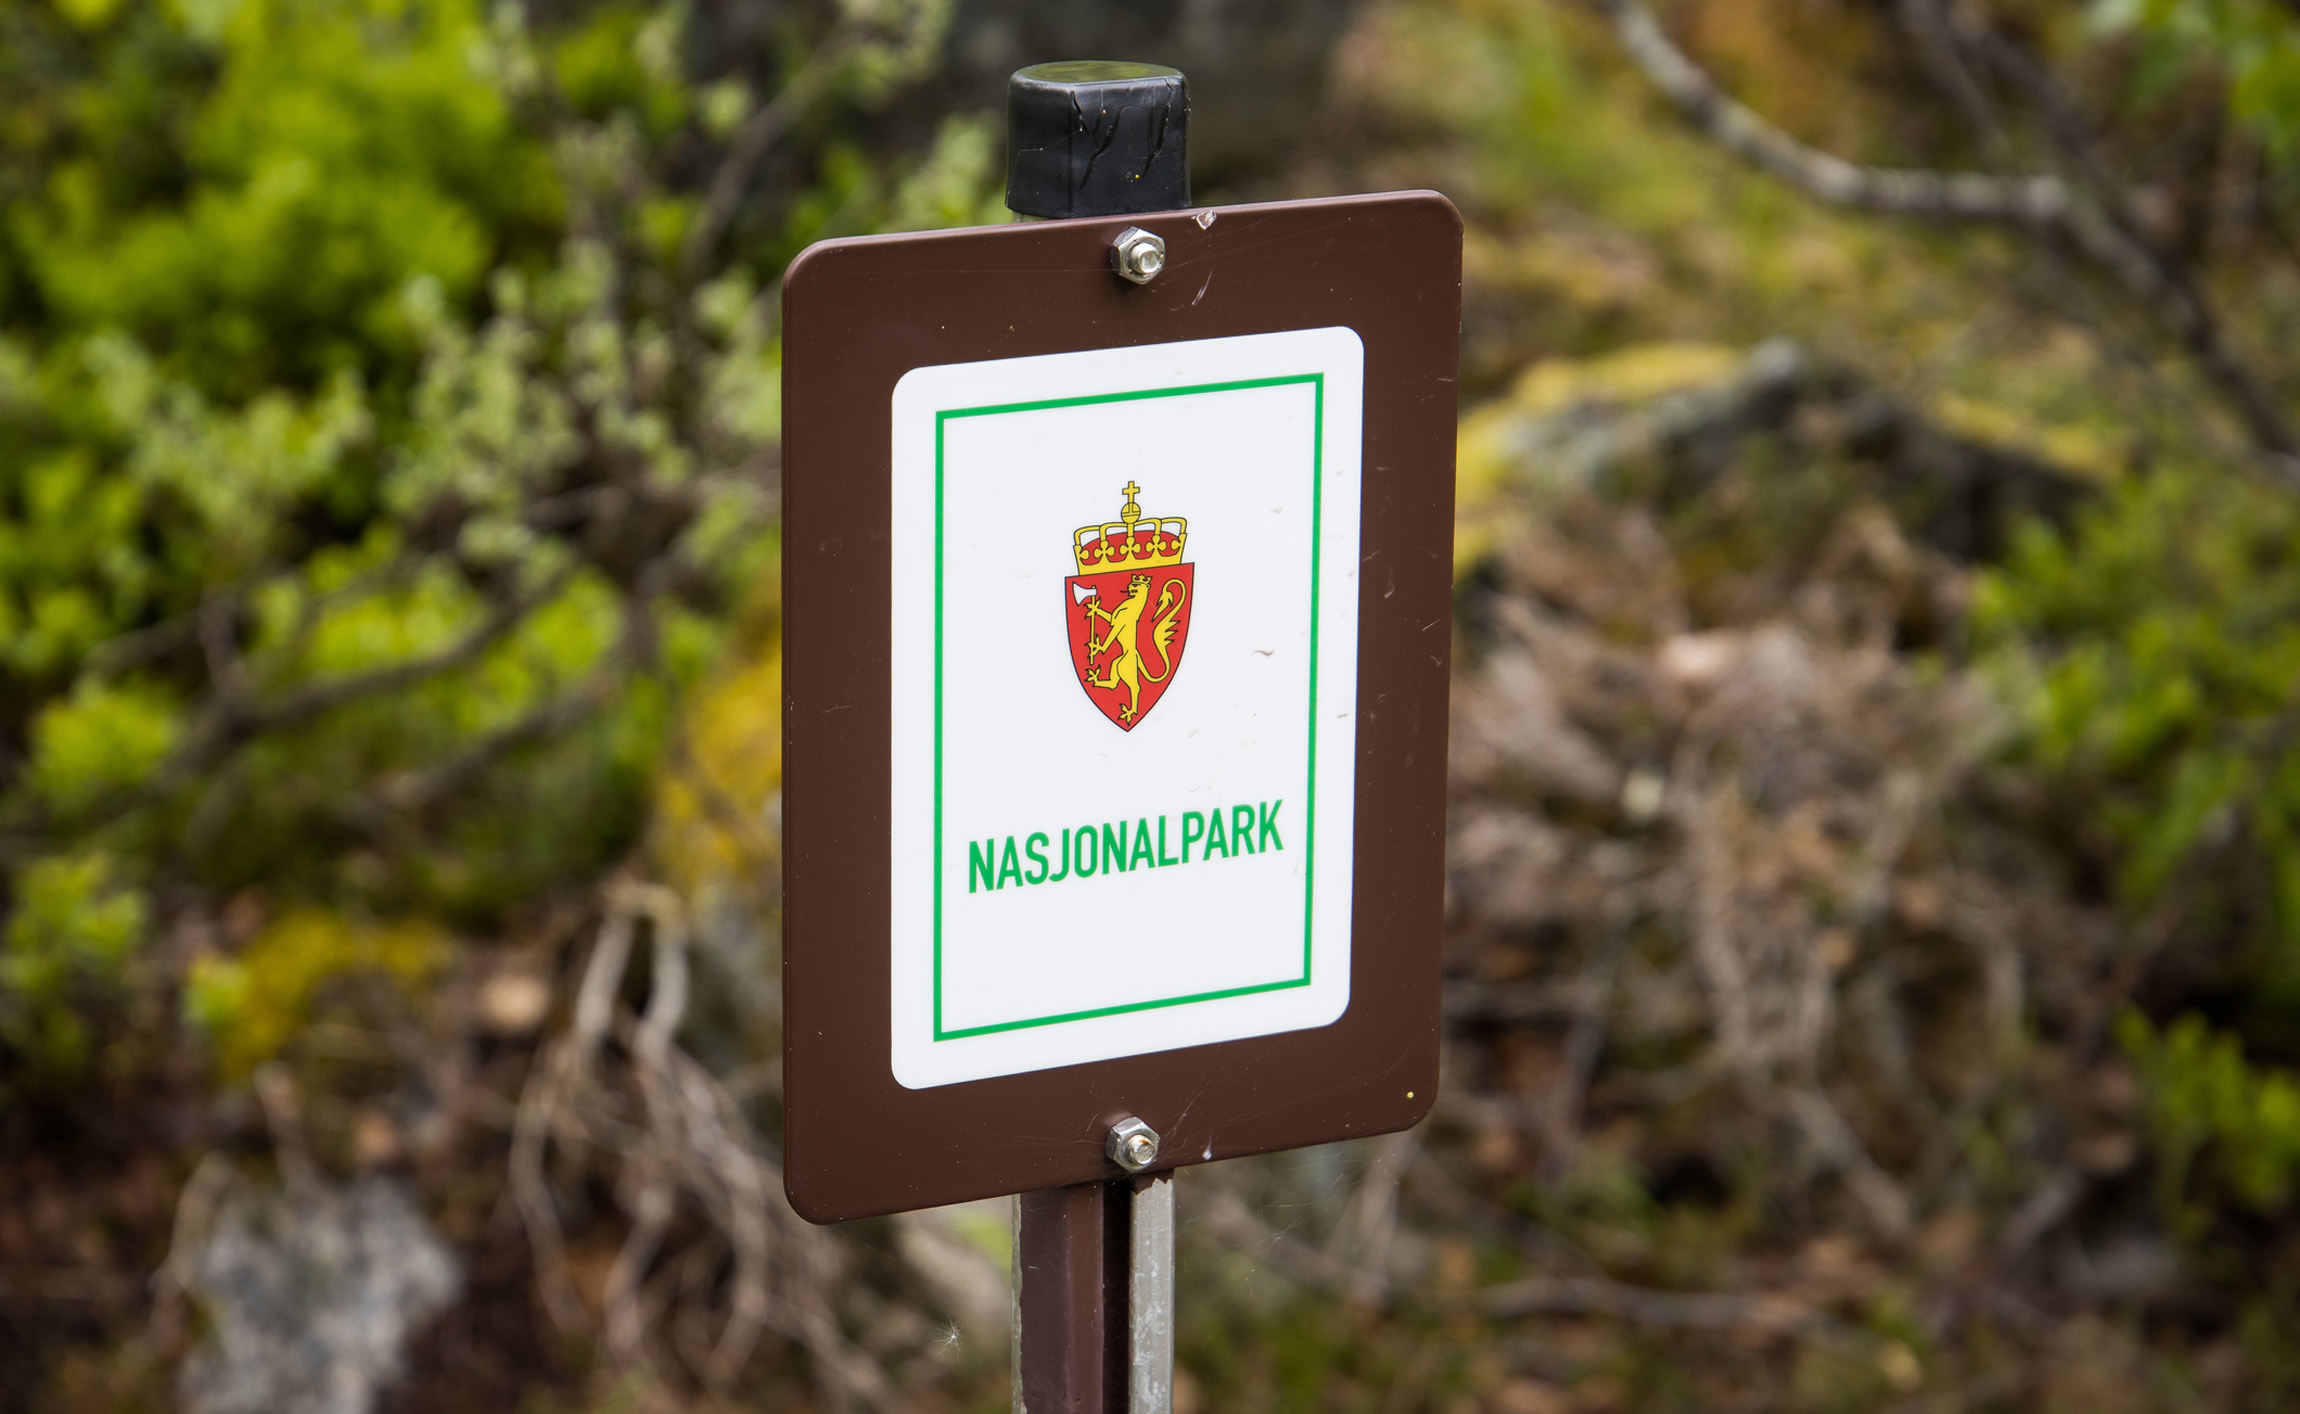 National park_sign-1.